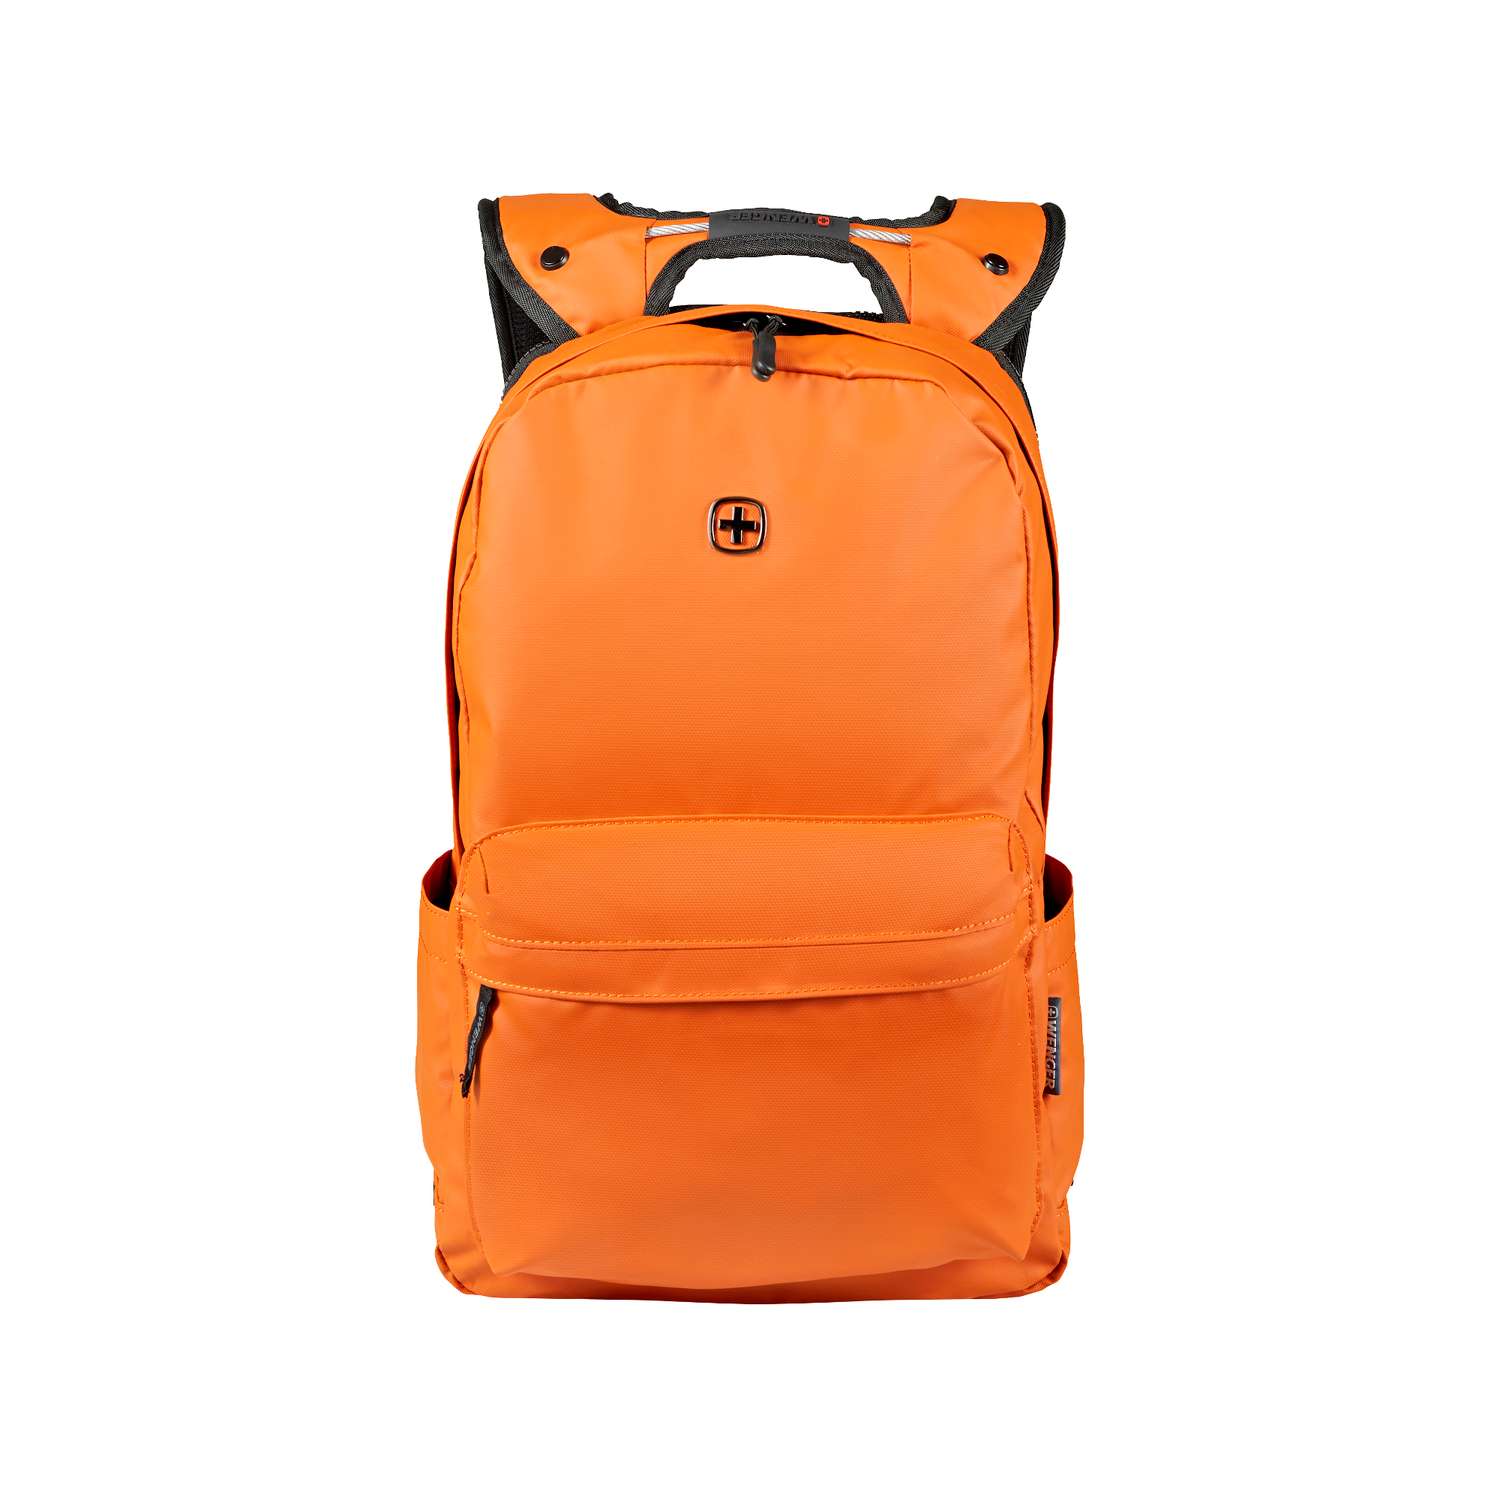 Рюкзак Wenger Photon с водоотталкивающим покрытием оранжевый - фото 1